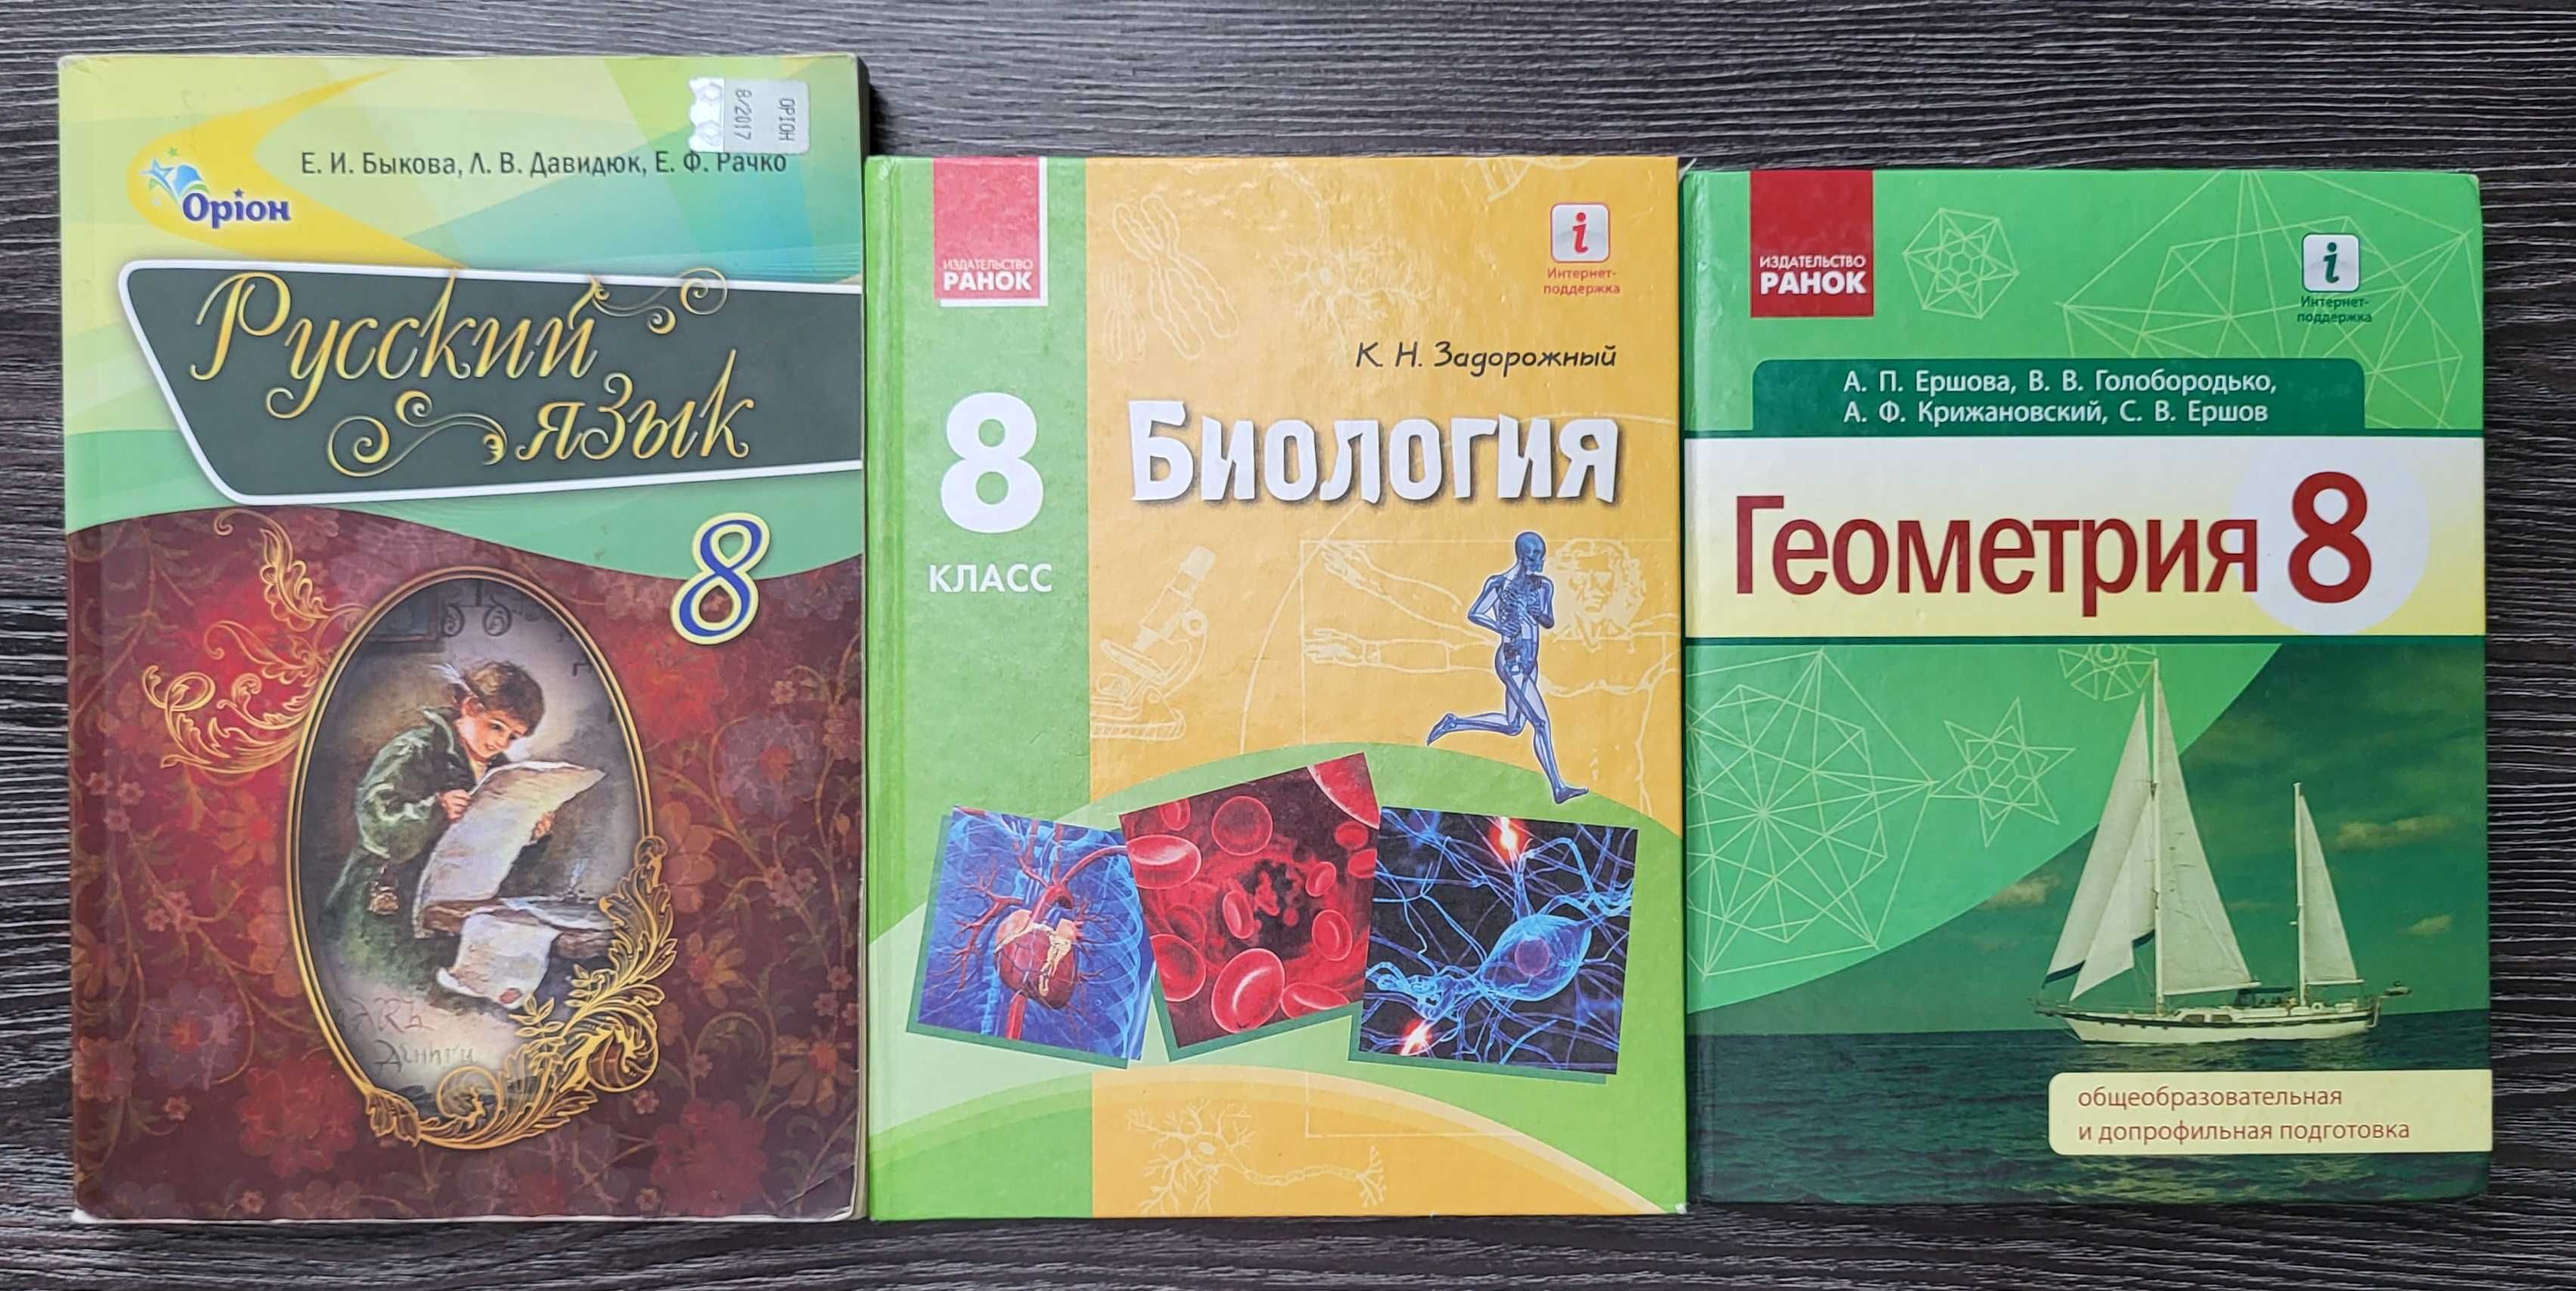 Підручник російською мовою 6, 7, 8, 9 клас книги, учебники